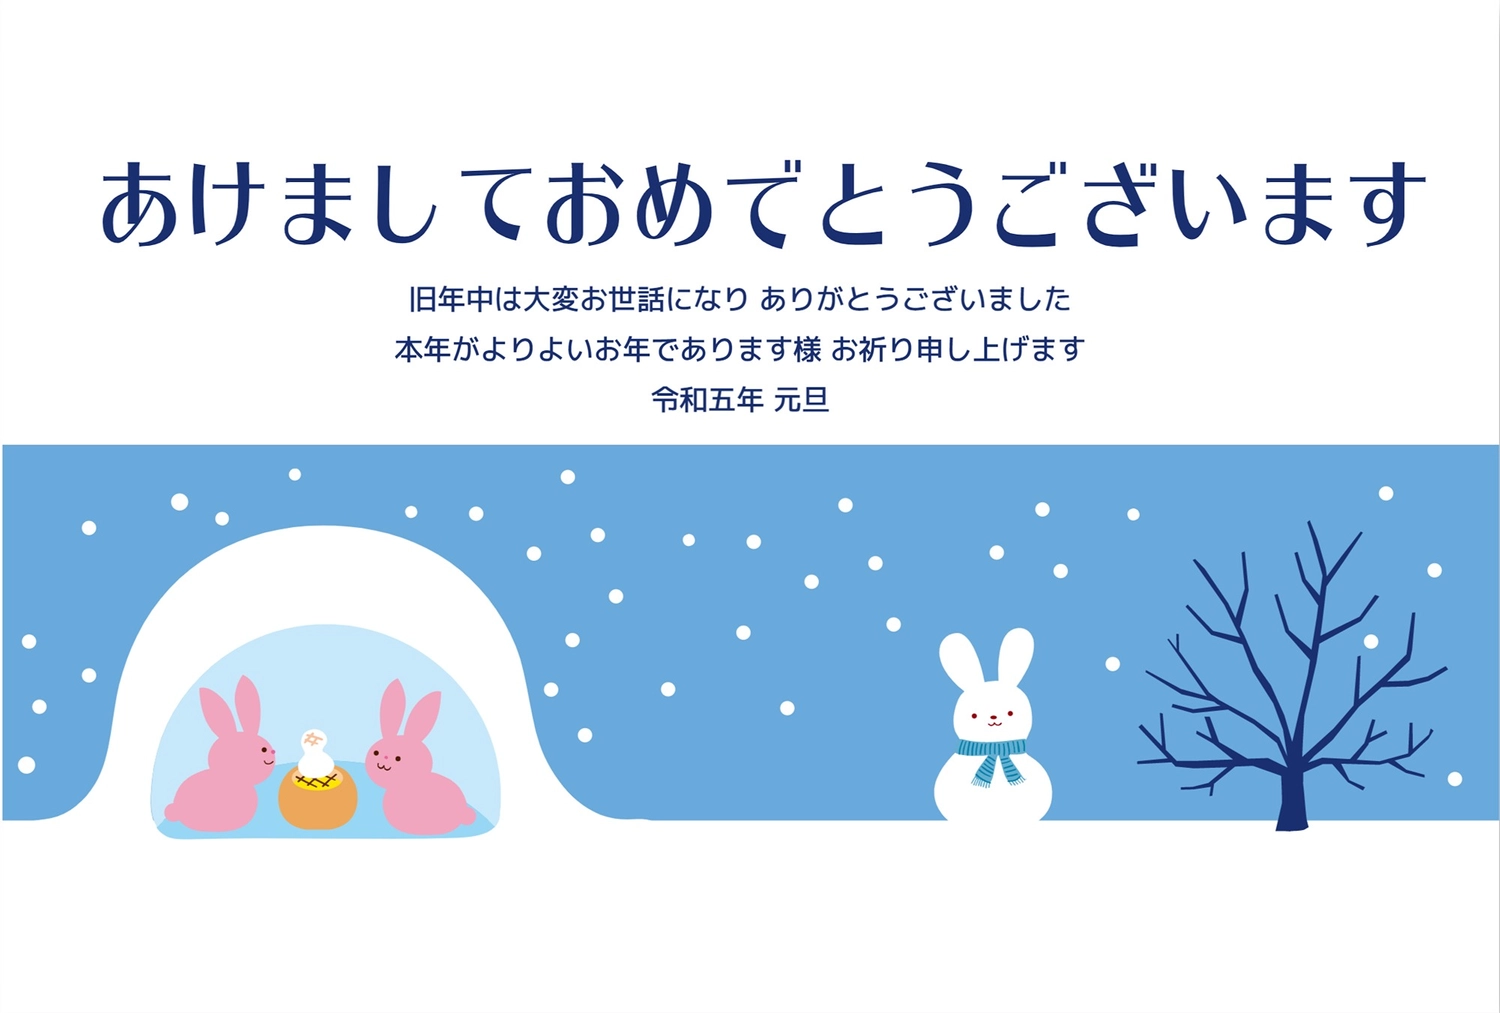 かまくらとうさぎの年賀状, New Year's card, concord, mid-January festival in northern Japan, with snow huts in which children play house, New Year Card template